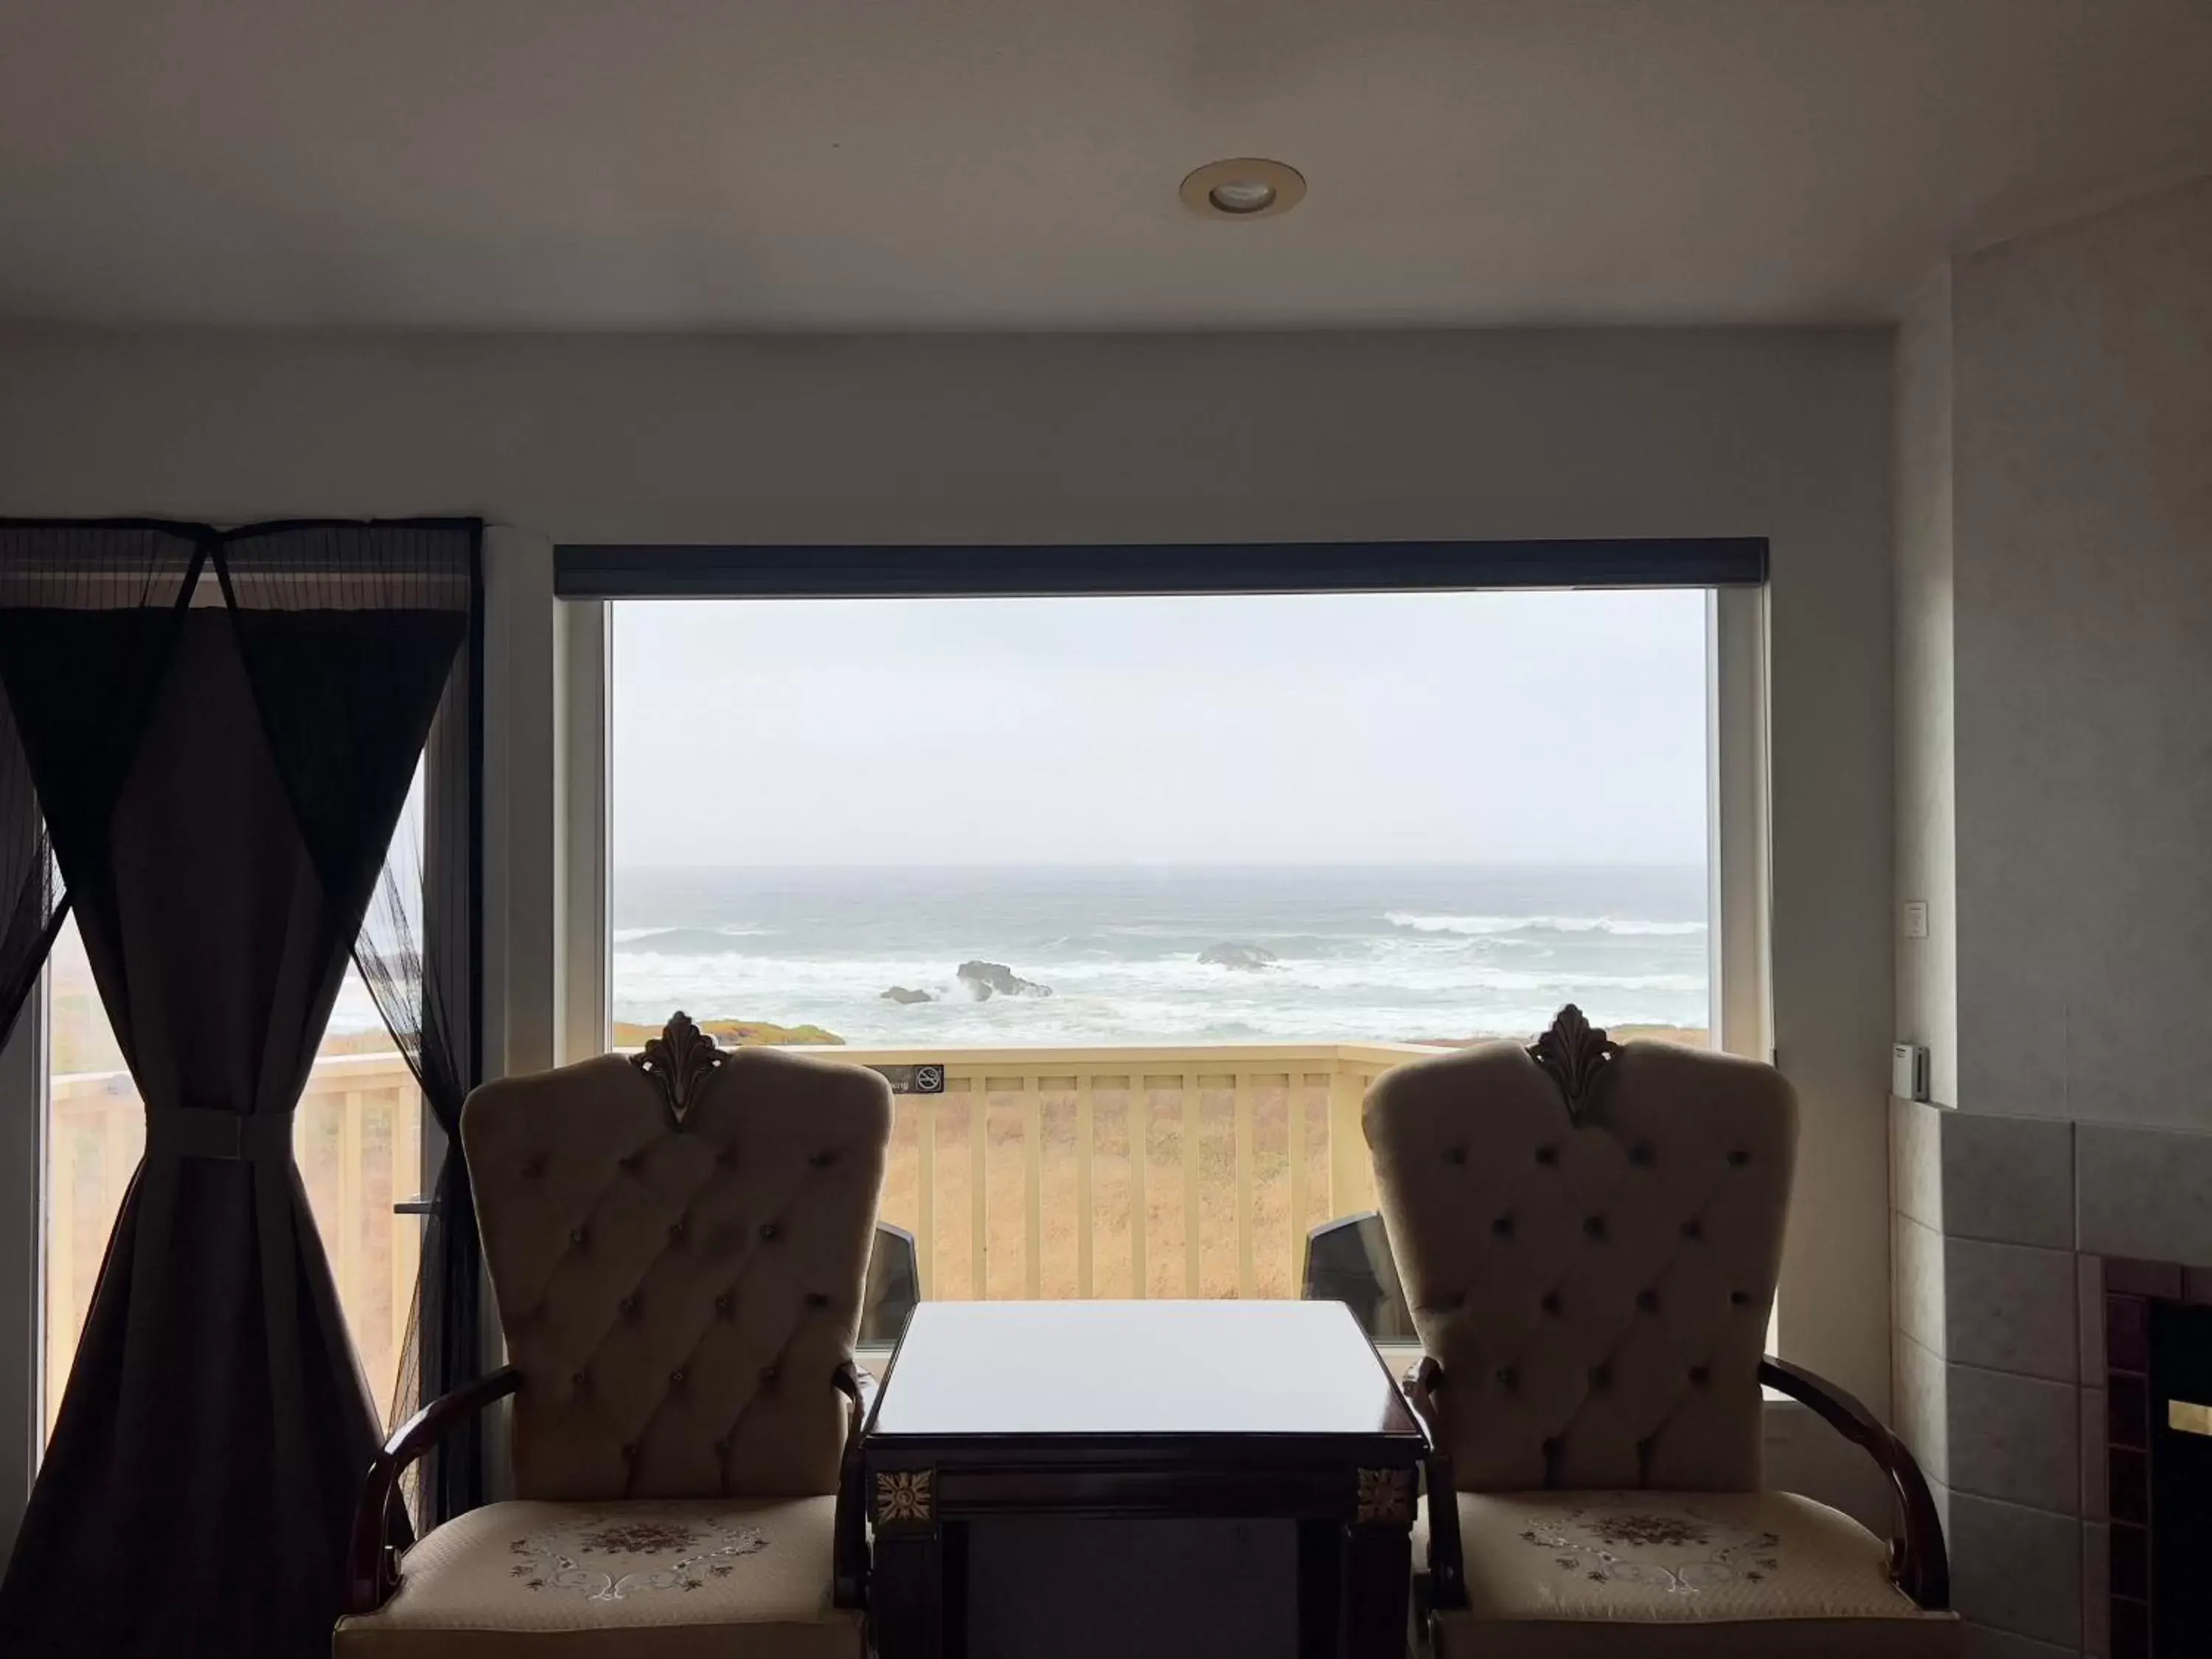 Ocean View Lodge